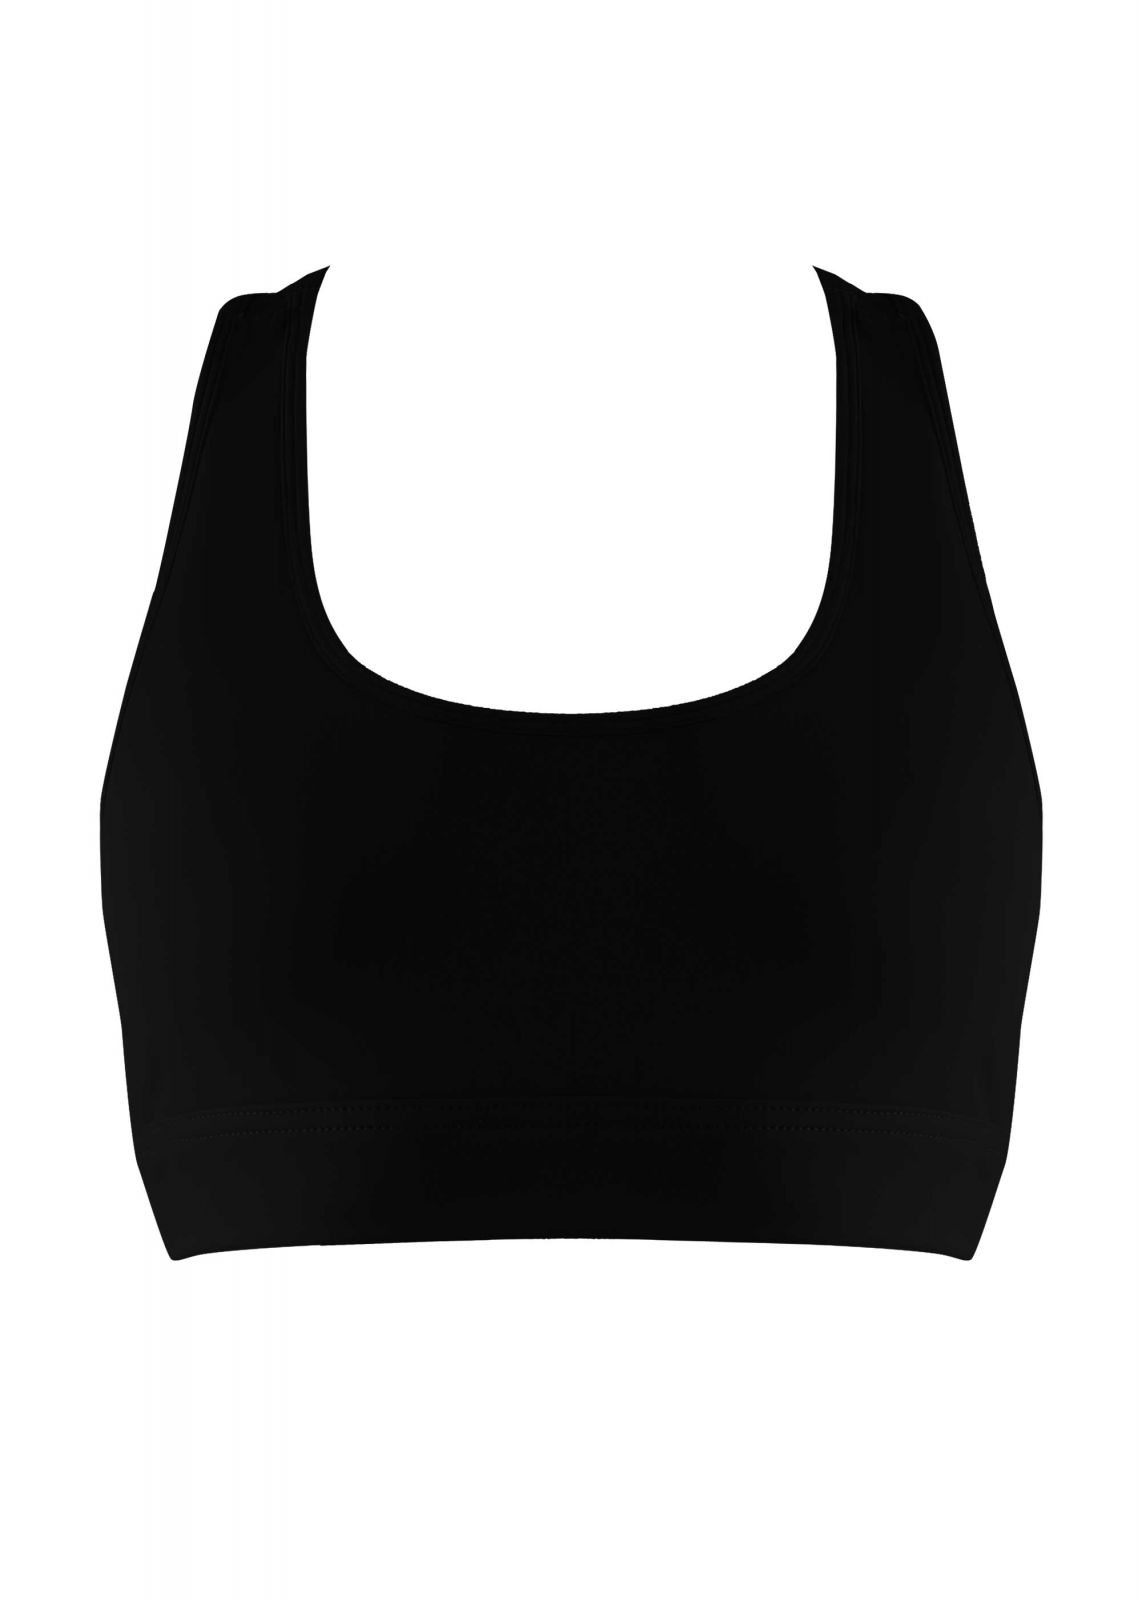 Γυναικείο αθλητικό μπουστάκι fitness λεπτομέρειες πλατης. ΜΑΥΡΟ - gsecret - 